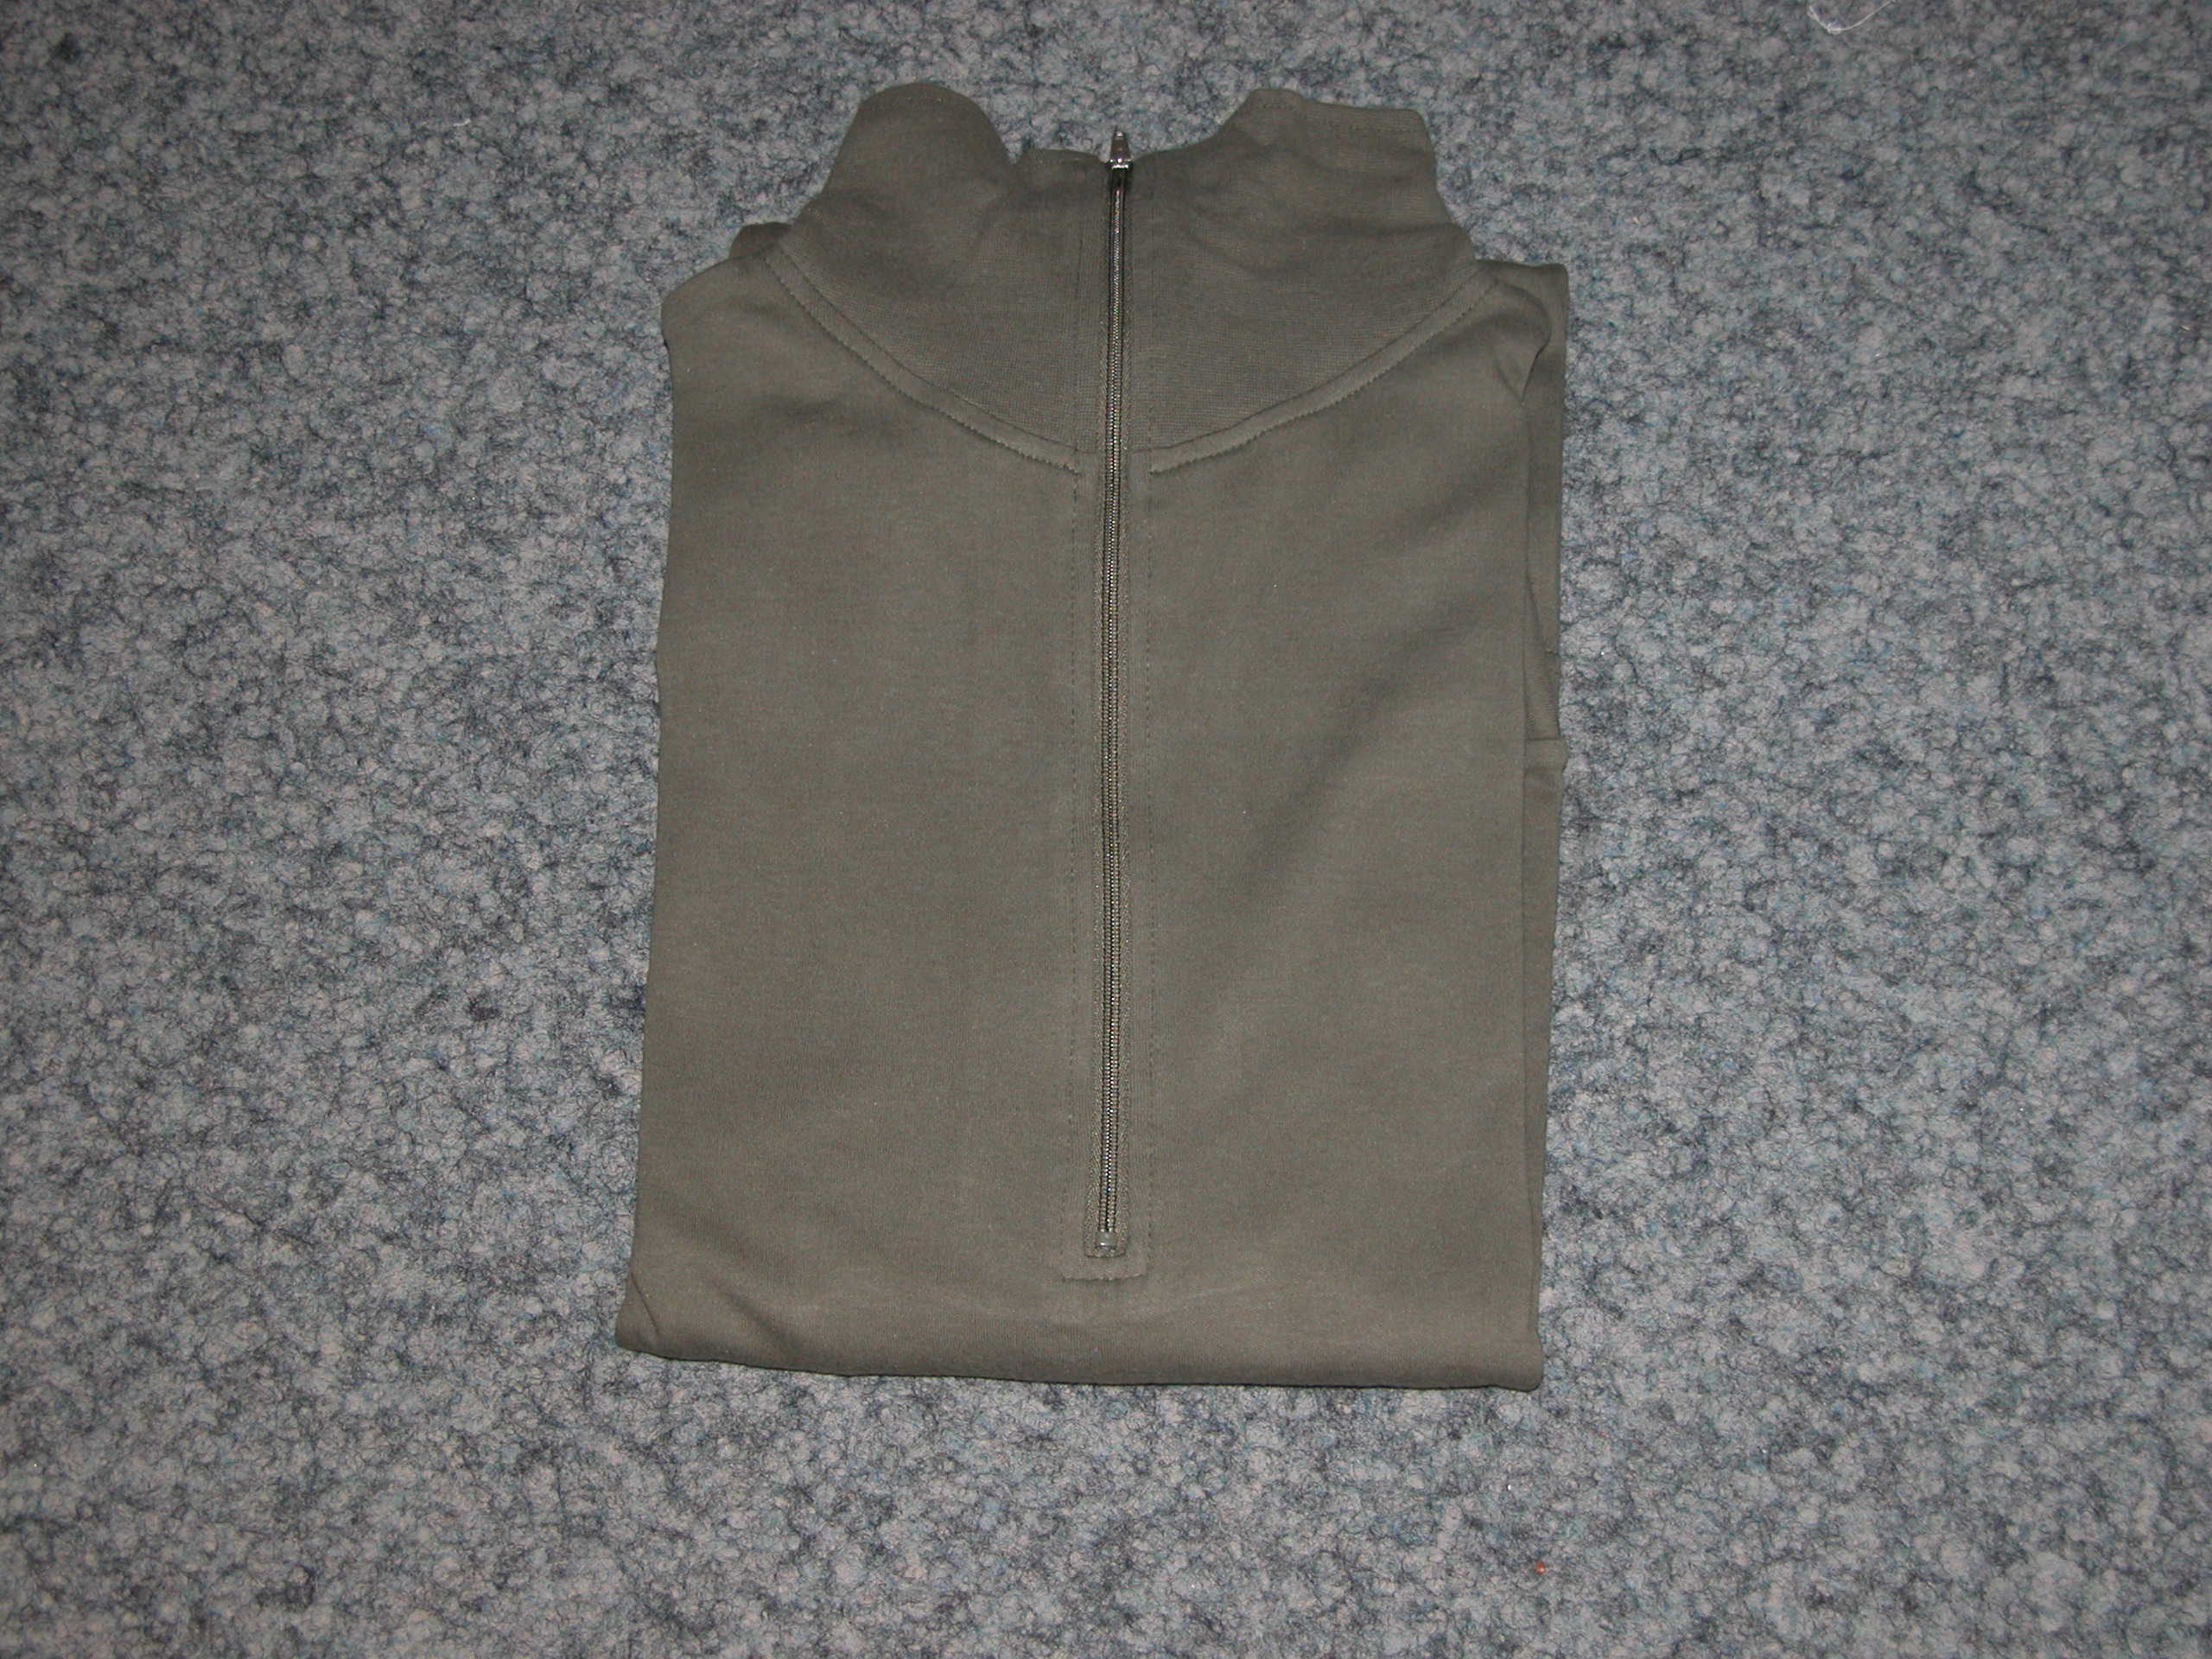 Gnägi Militär Rollkragen Shirt oliv, Langarm, CH Produkt